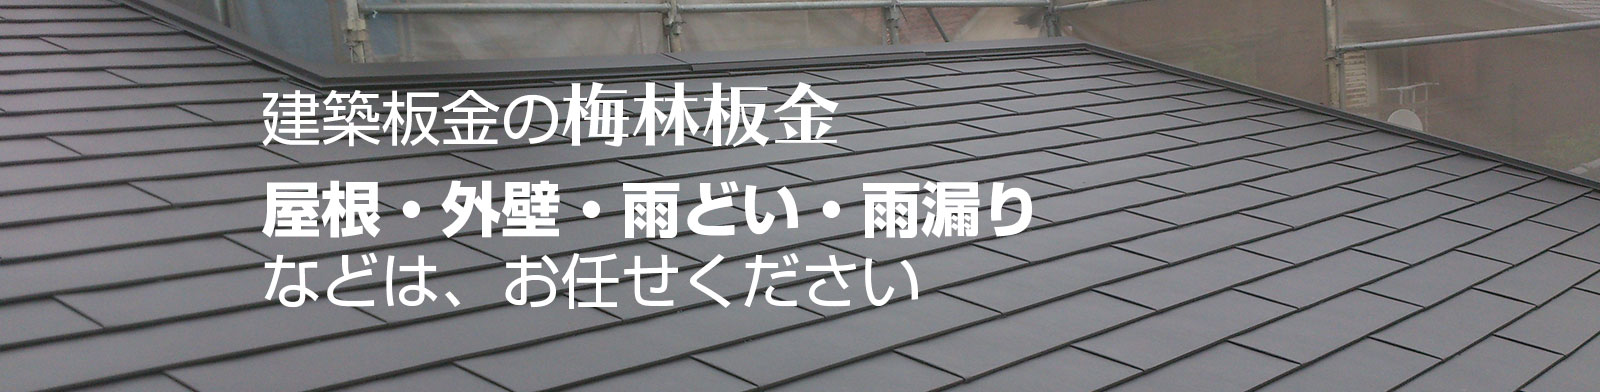 住宅屋根の建築板金施工